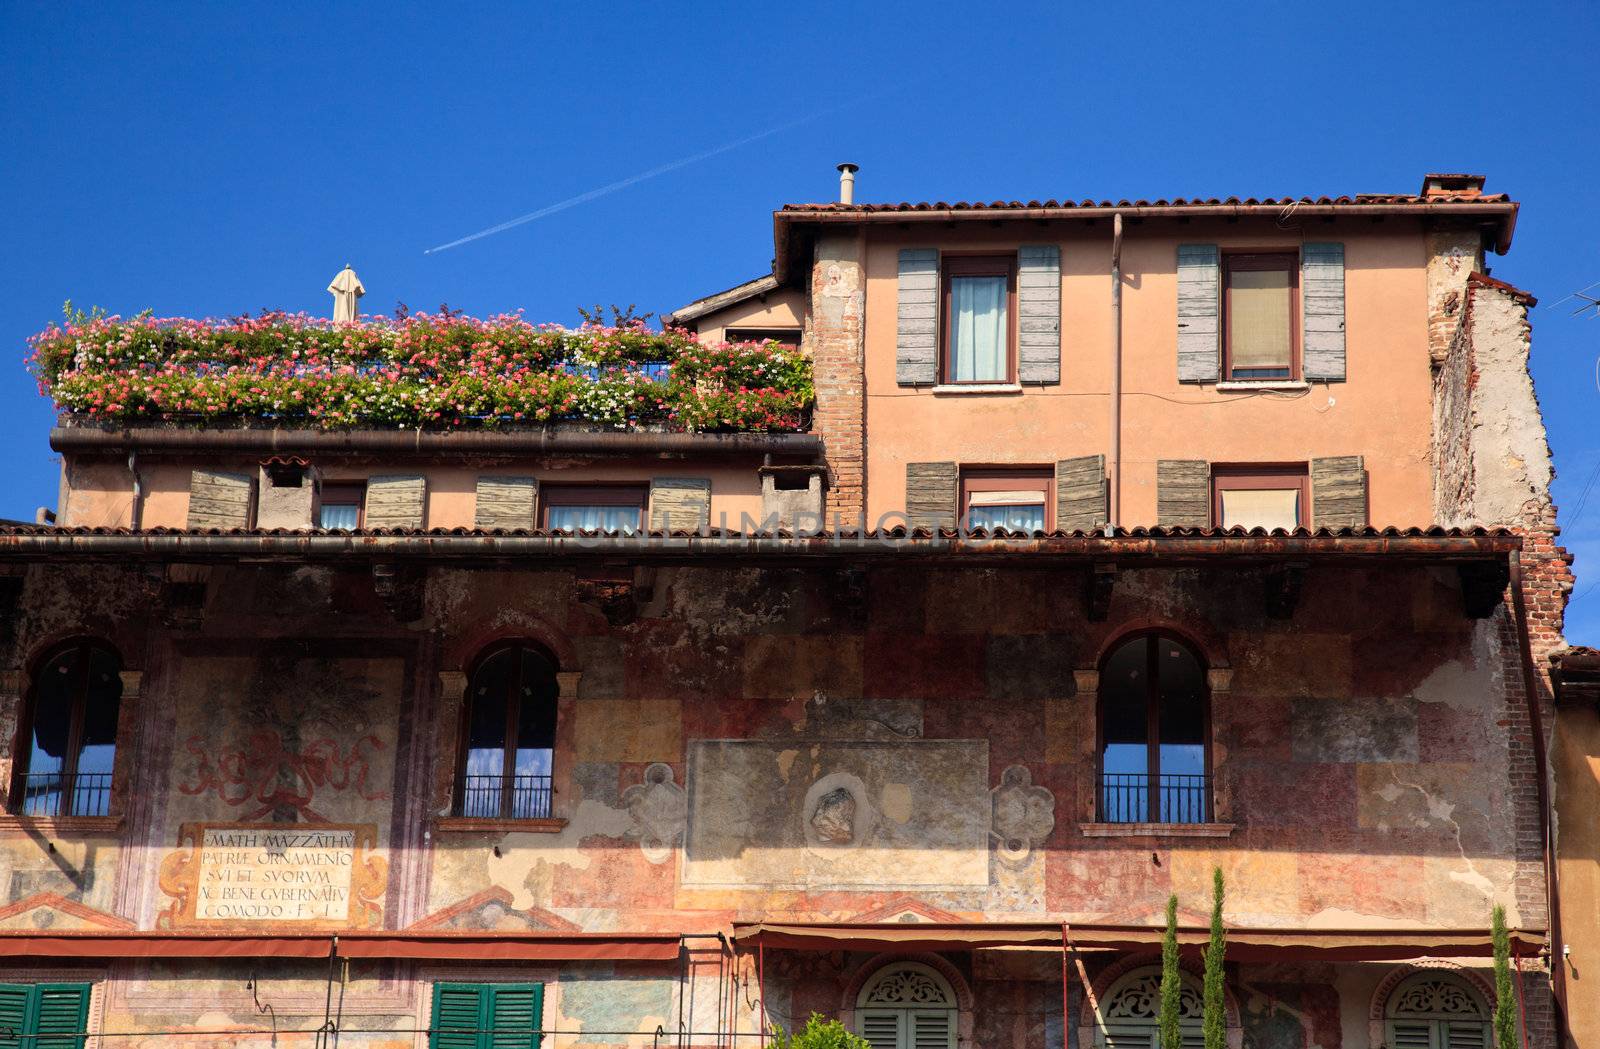 Old buildings in Verona by steheap